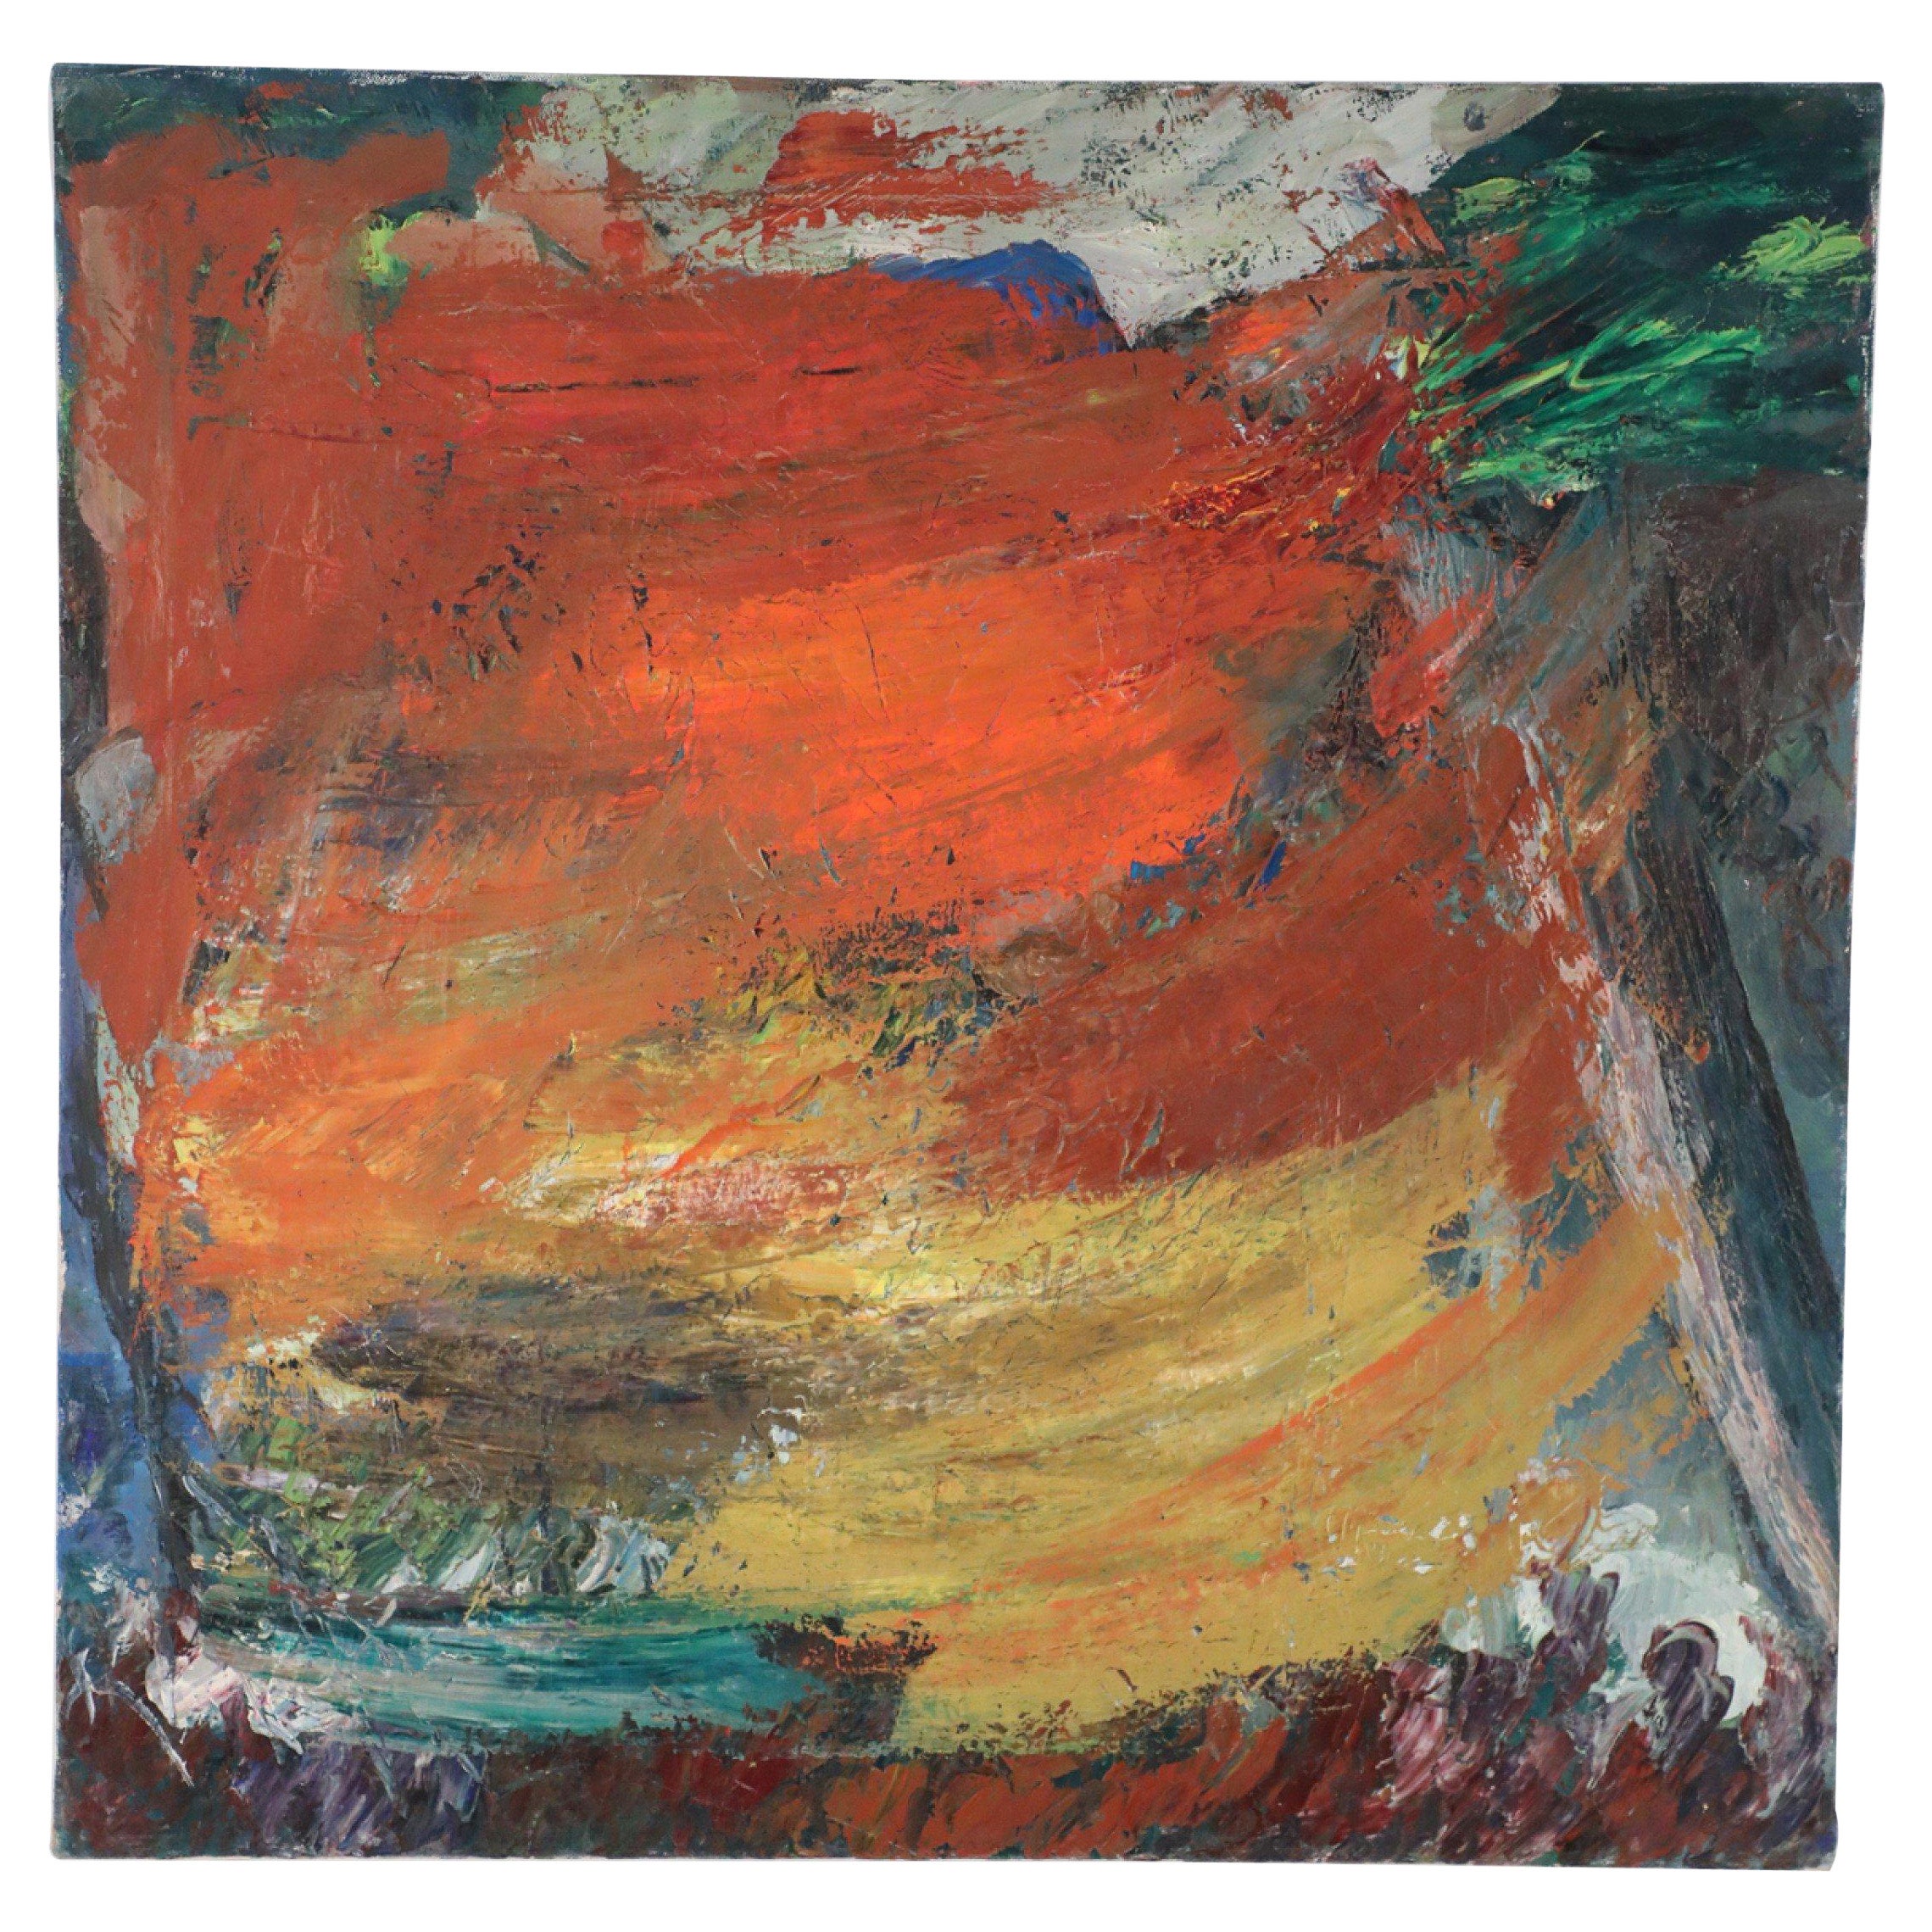 Mehrfarbiges abstraktes Gemälde auf Leinwand in warmen Farbtönen